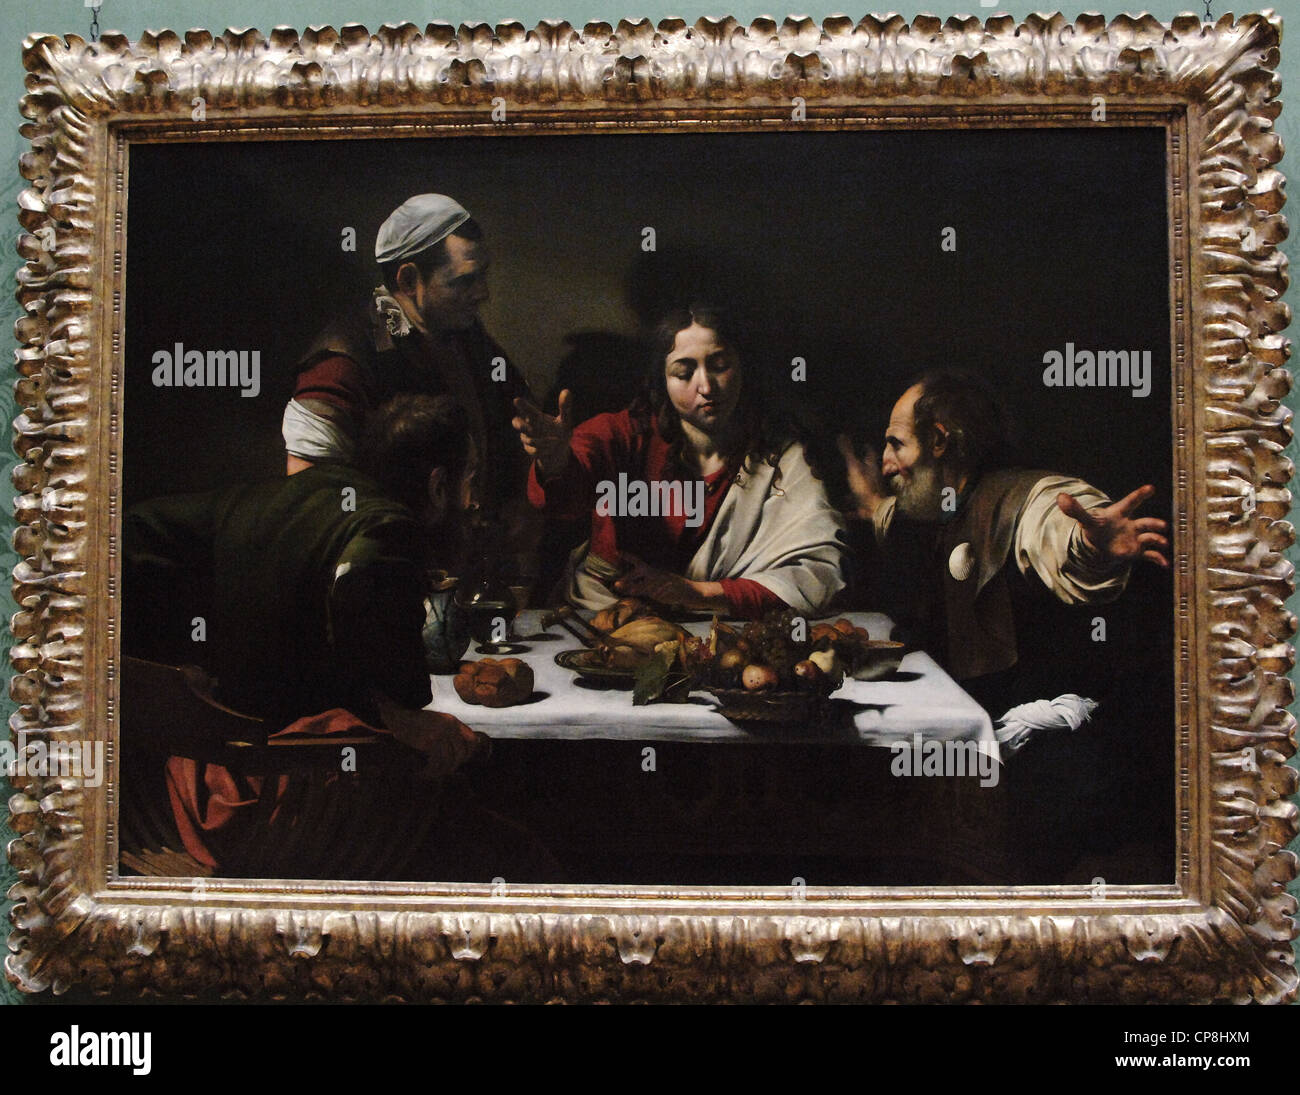 Barocke Kunst. Italien. Michelangelo Merisi da Caravaggio (1571-1610). Italienischer Maler. Abendmahl in Emmaus (1601). Öl auf Leinwand. Stockfoto